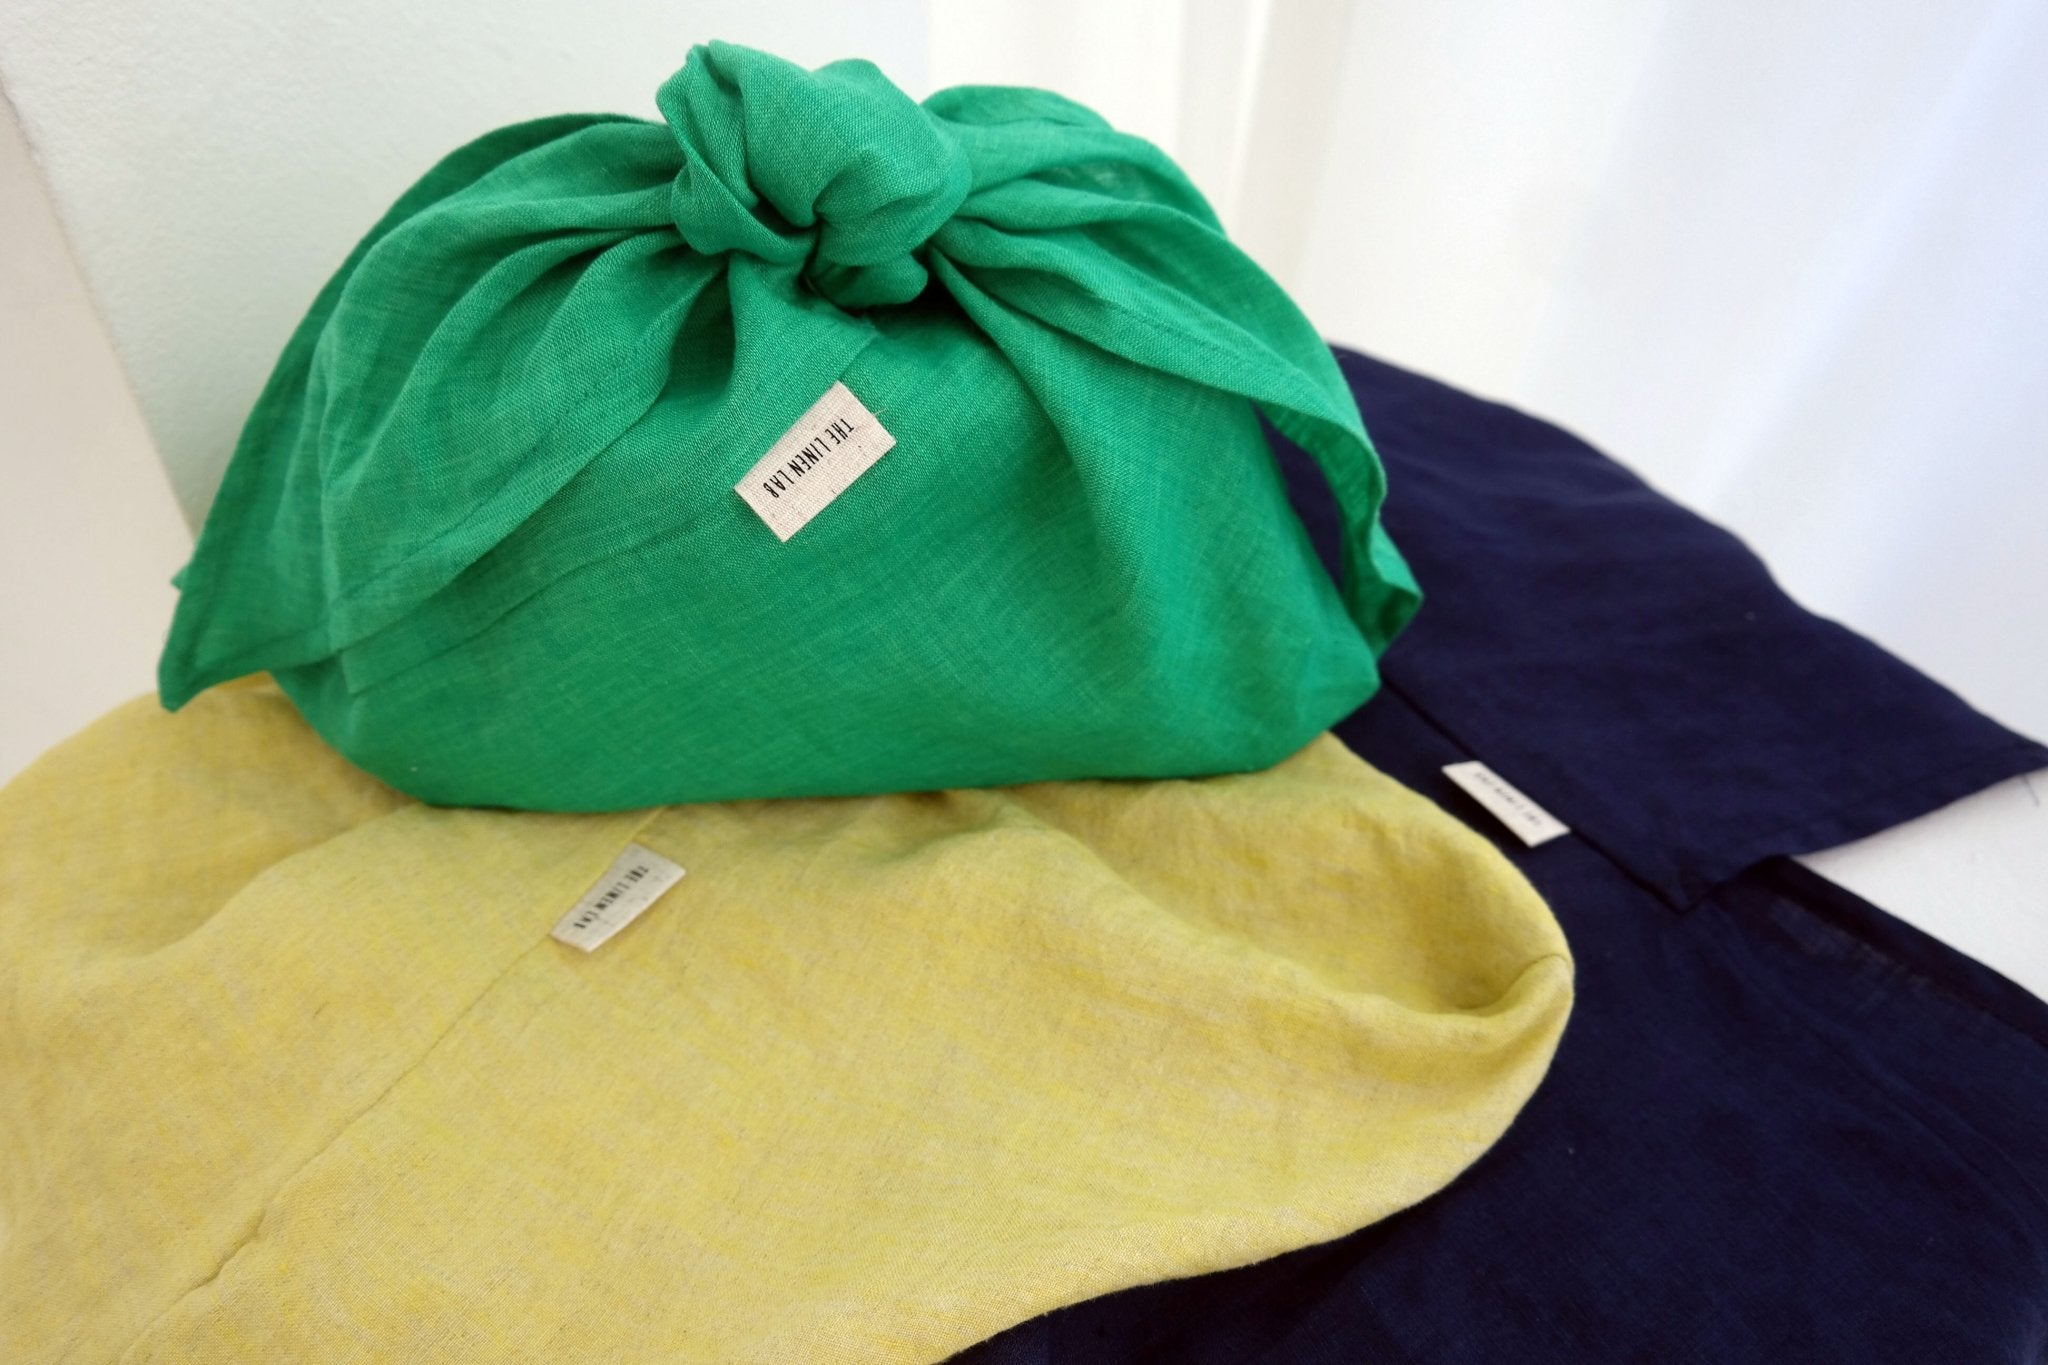 Linen Zero Waste Linen Bento Bag - The Linen Lab - Green